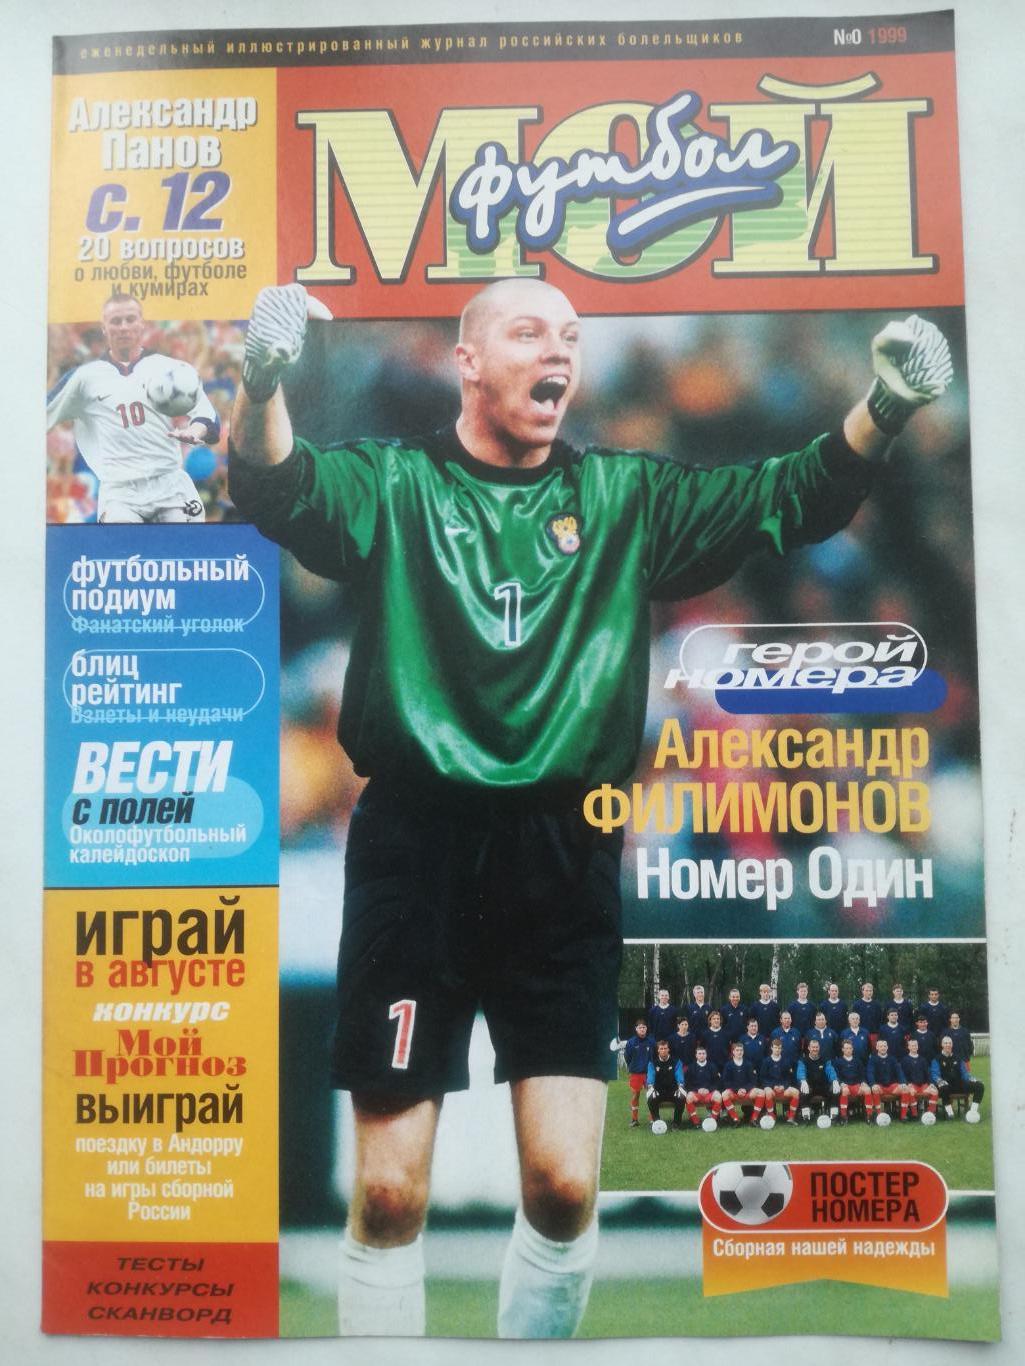 Журнал Мой футбол. 1999, №0 (нулевой номер). Постер - сборная России